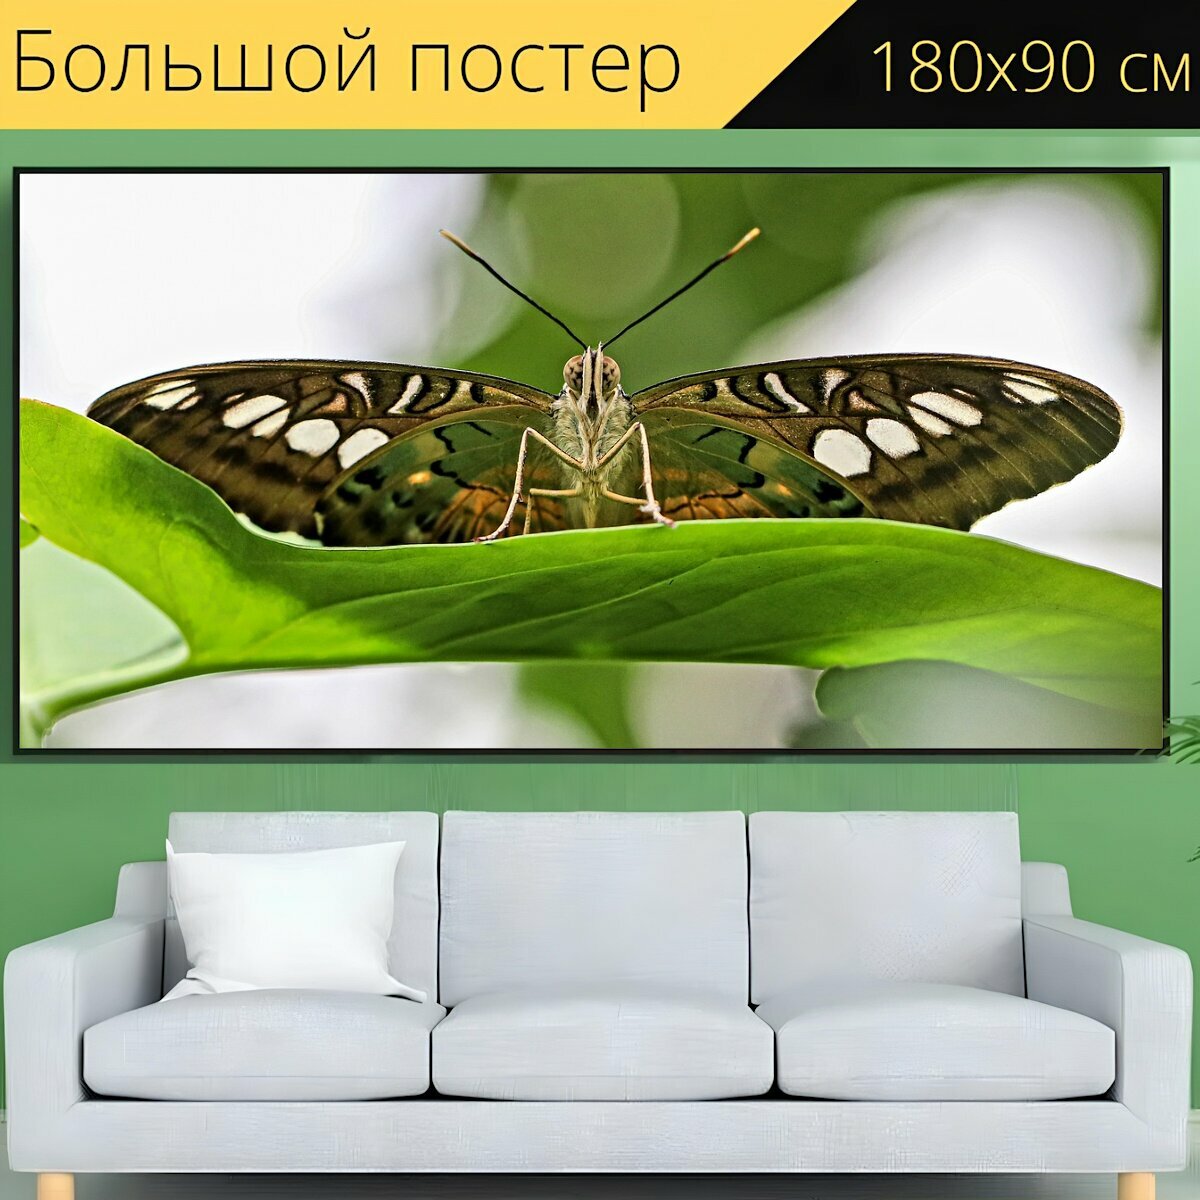 Большой постер "Бабочка, макрос, природа" 180 x 90 см. для интерьера